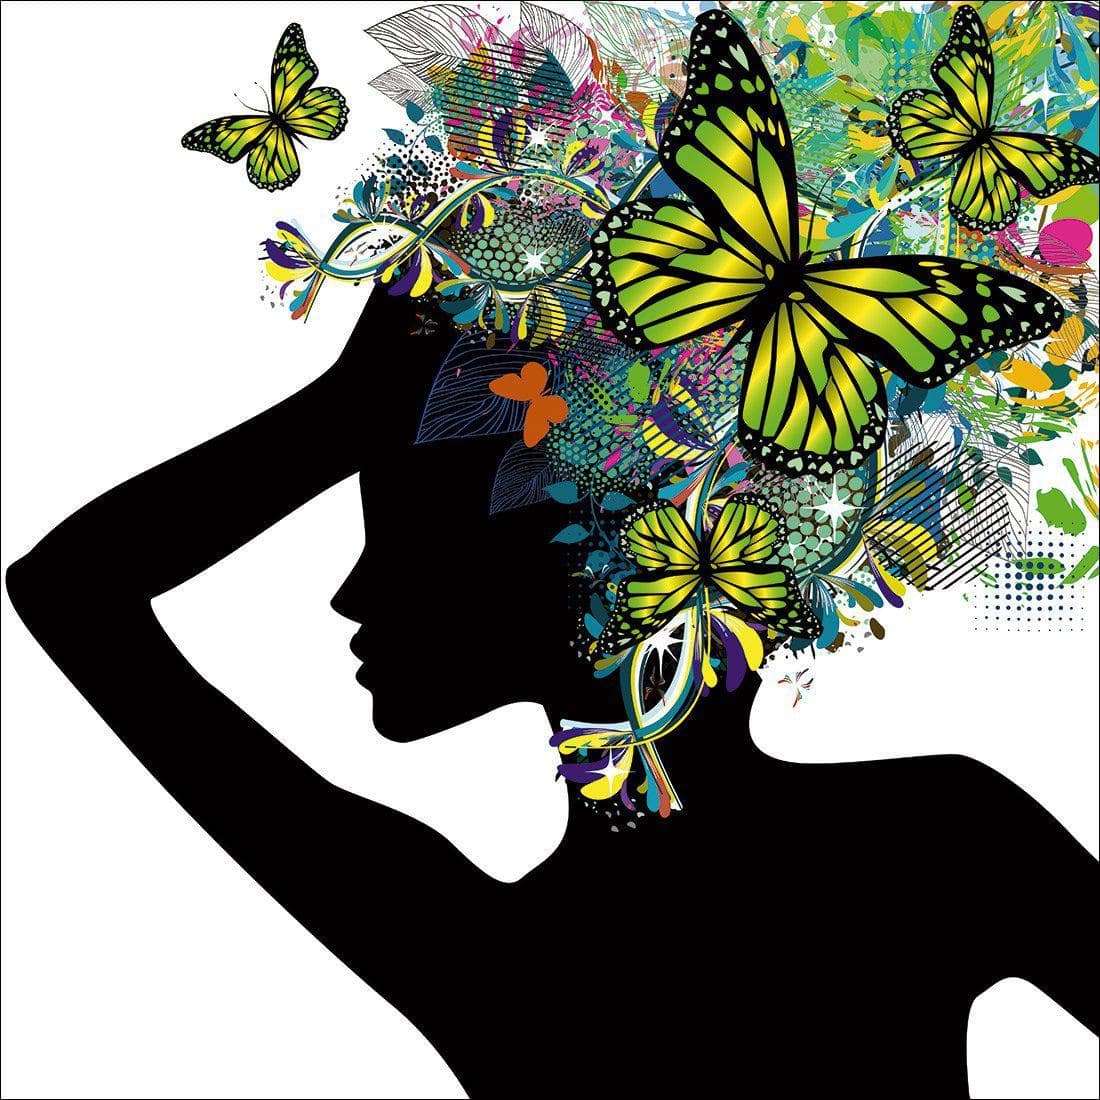 Silhouette Of Butterflies Canvas Art-Canvas-Wall Art Designs-30x30cm-Canvas - No Frame-Wall Art Designs